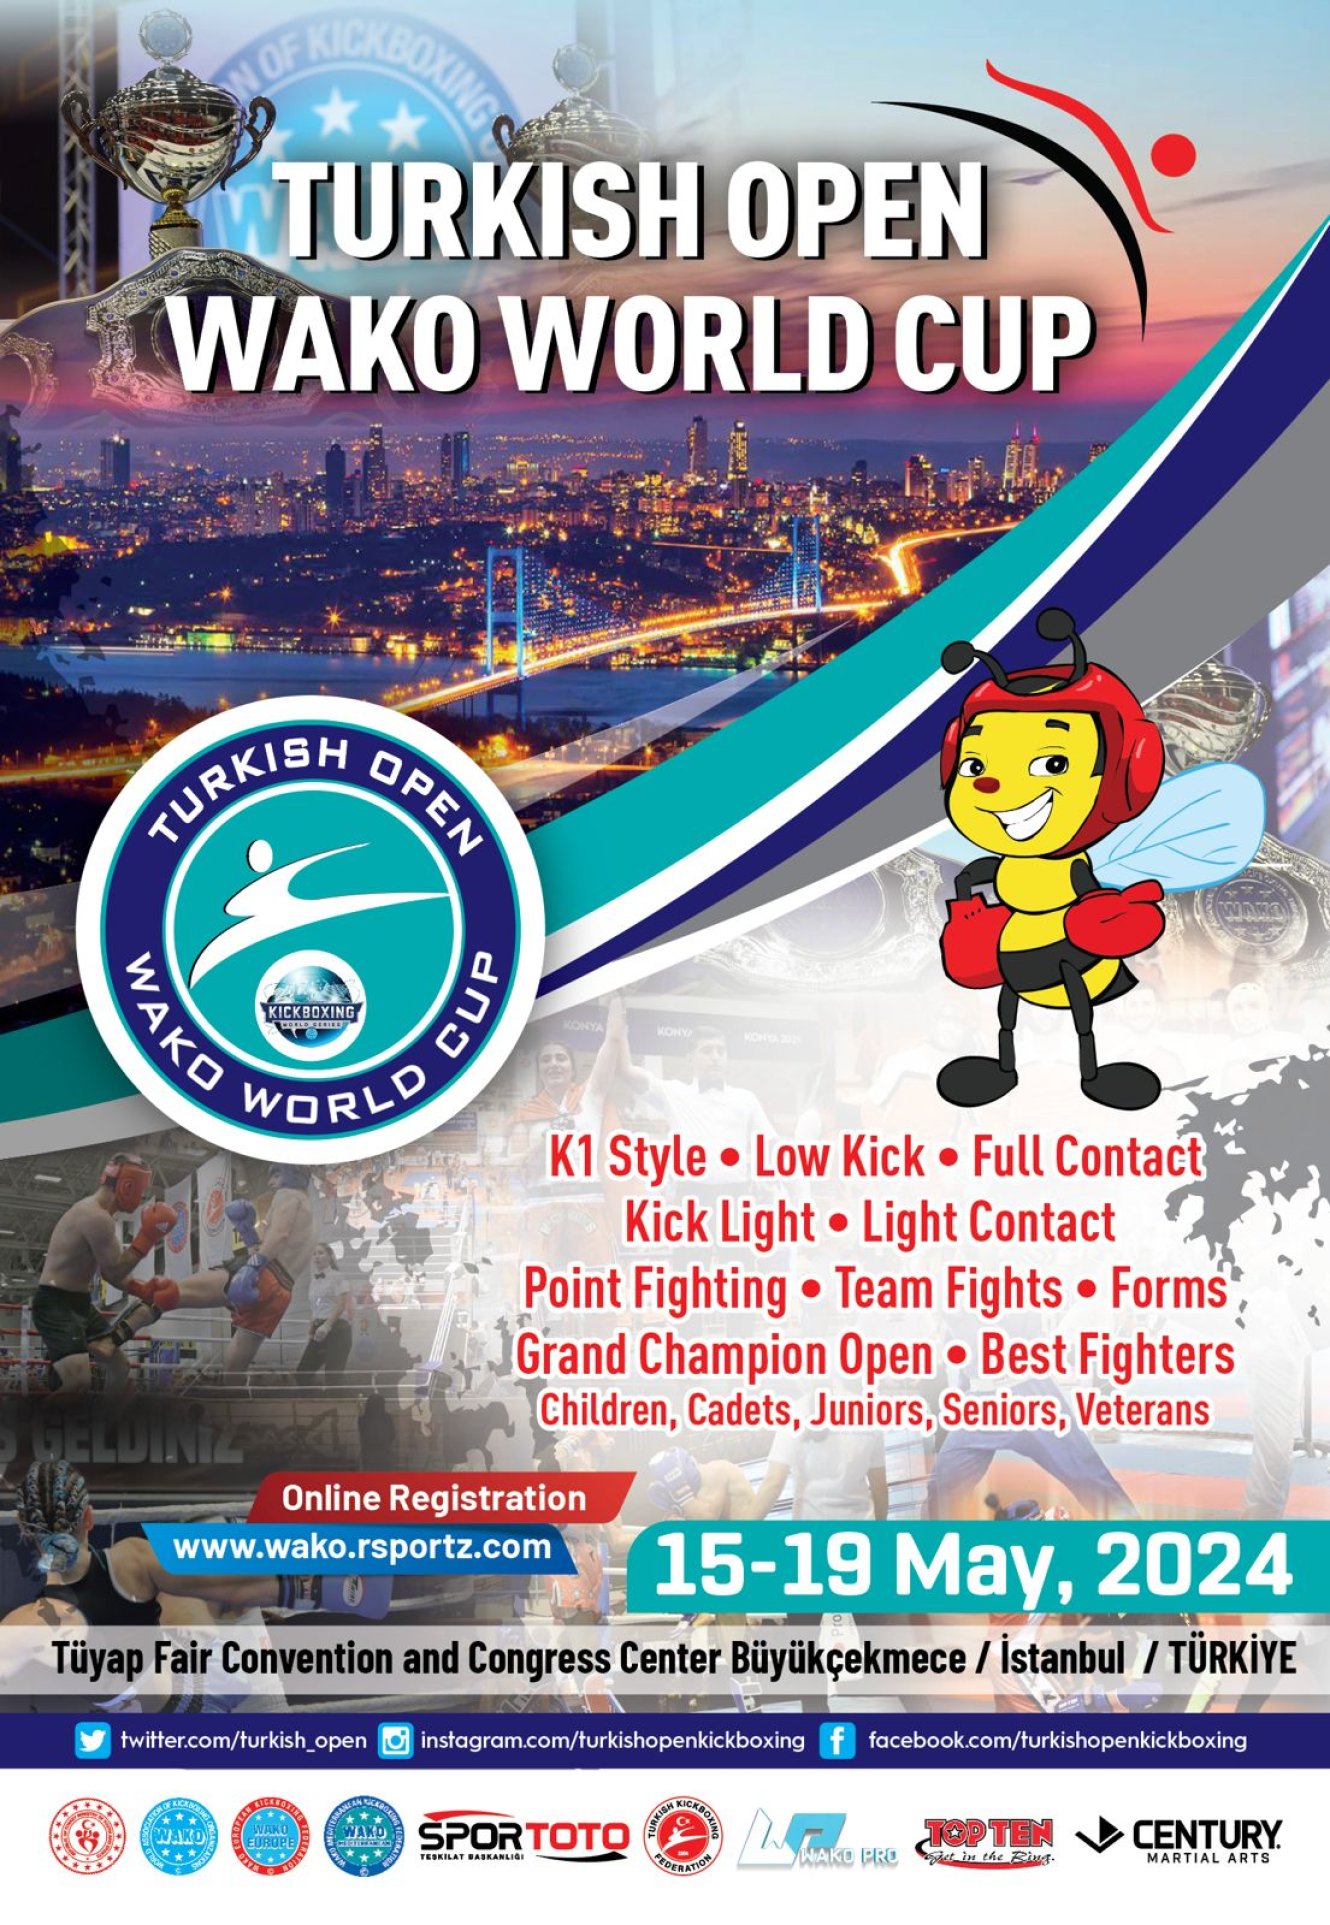 Turkish Open Dünya Kick Boks Kupası
15-19 Mayıs 2024
İstanbul